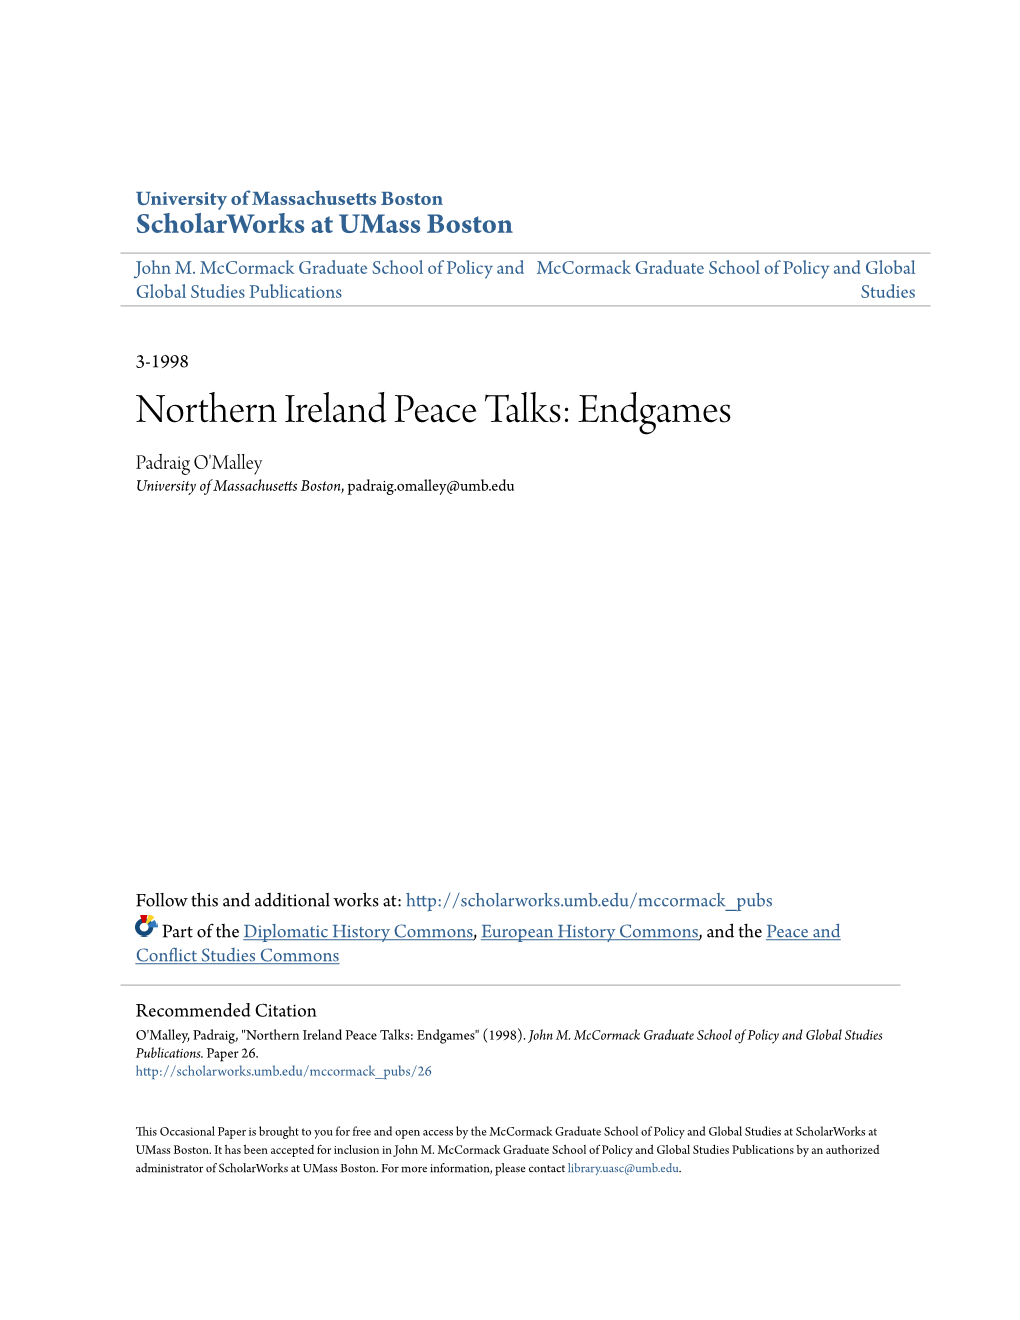 Northern Ireland Peace Talks: Endgames Padraig O'malley University of Massachusetts Boston, Padraig.Omalley@Umb.Edu